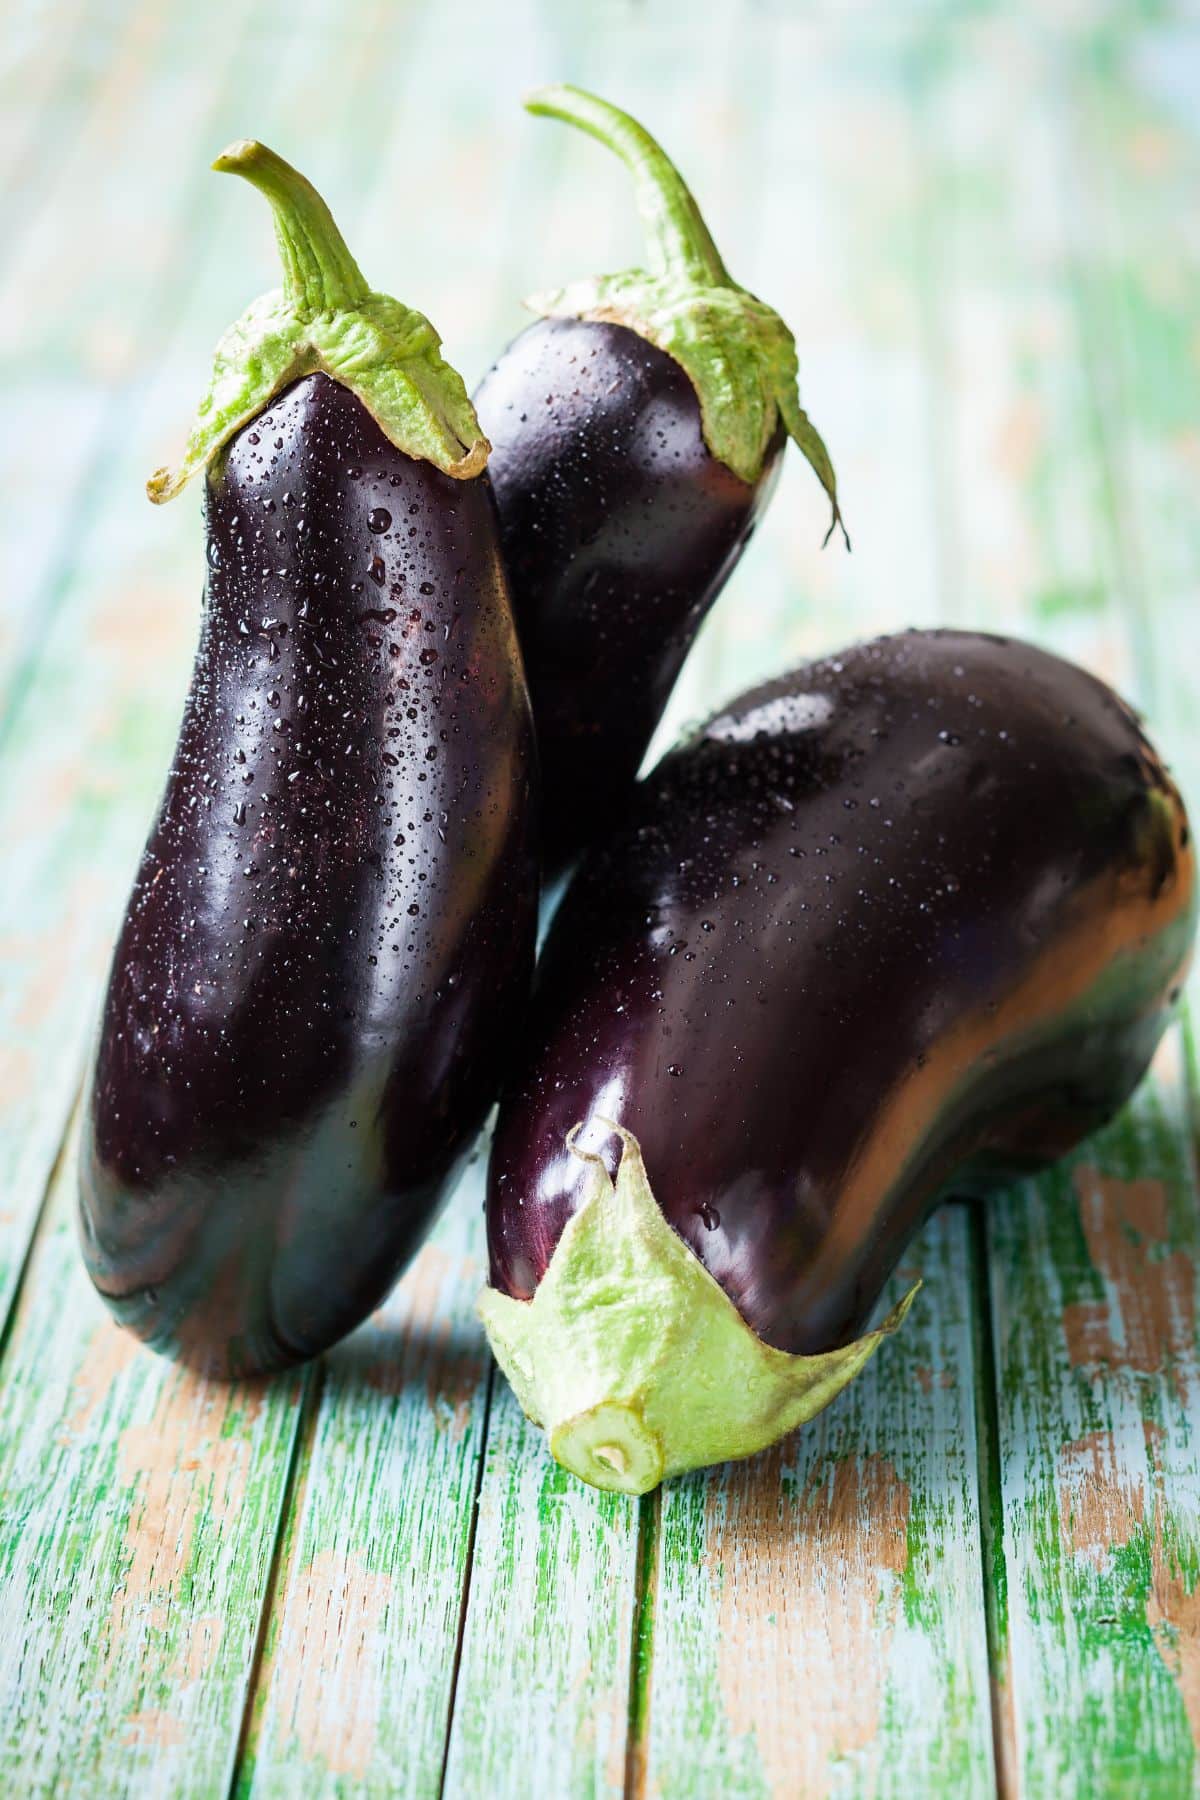 is eggplant keto friendly